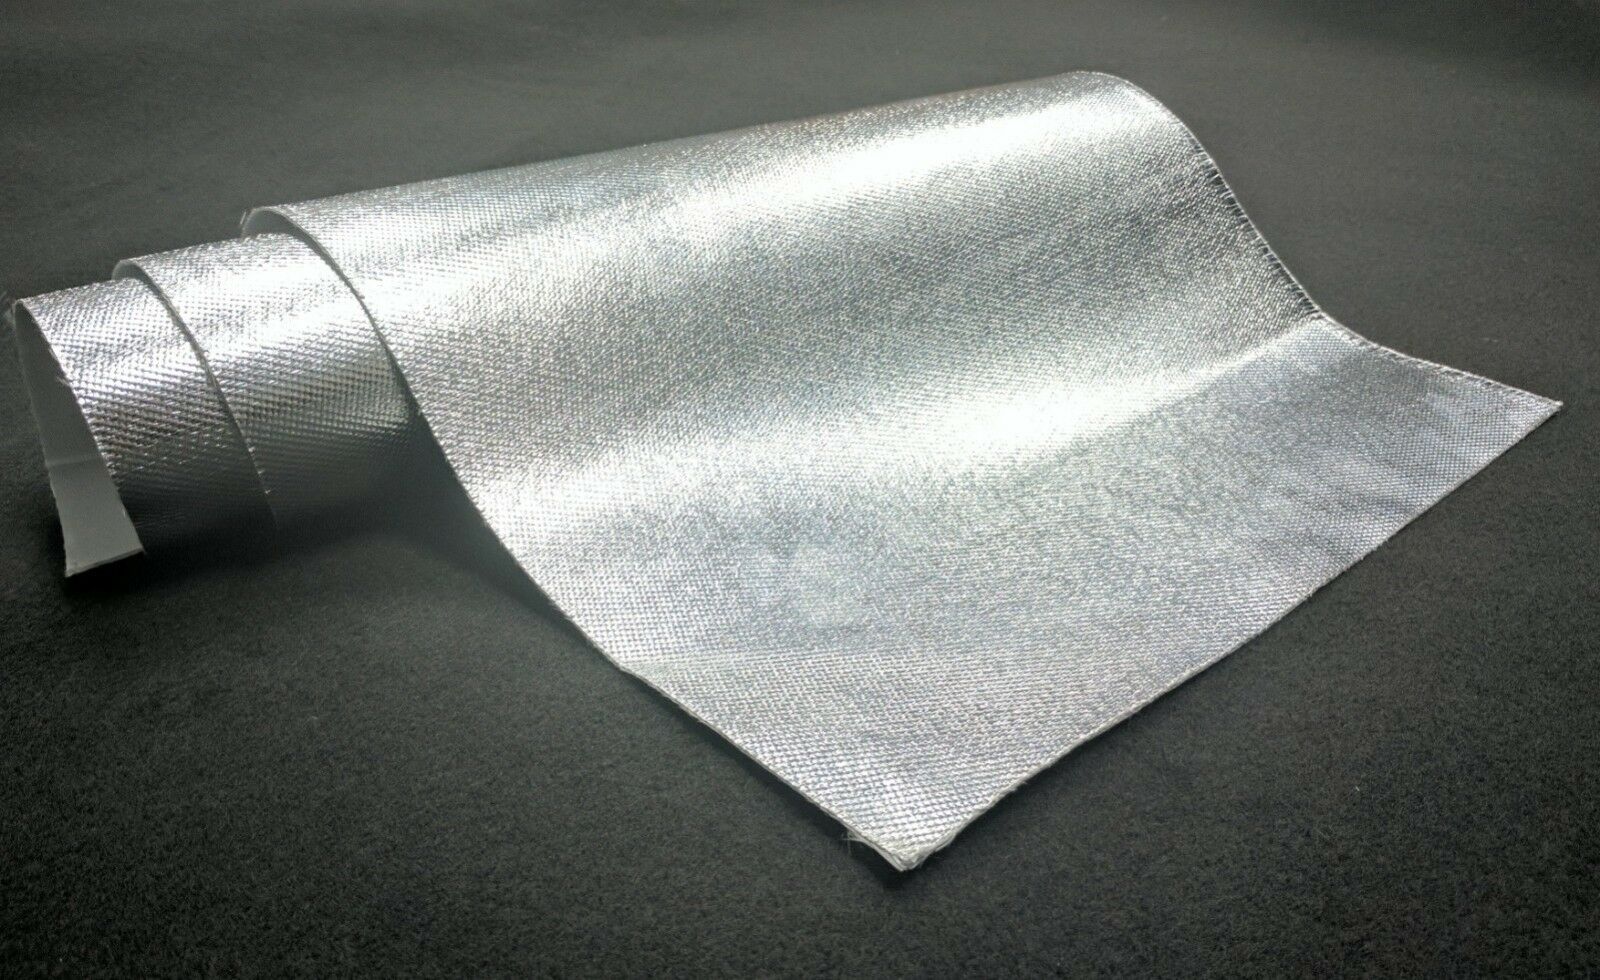 6.5 Sq Feet Aluminum Fiberglass Heat Shield Protection insulation exhaust header